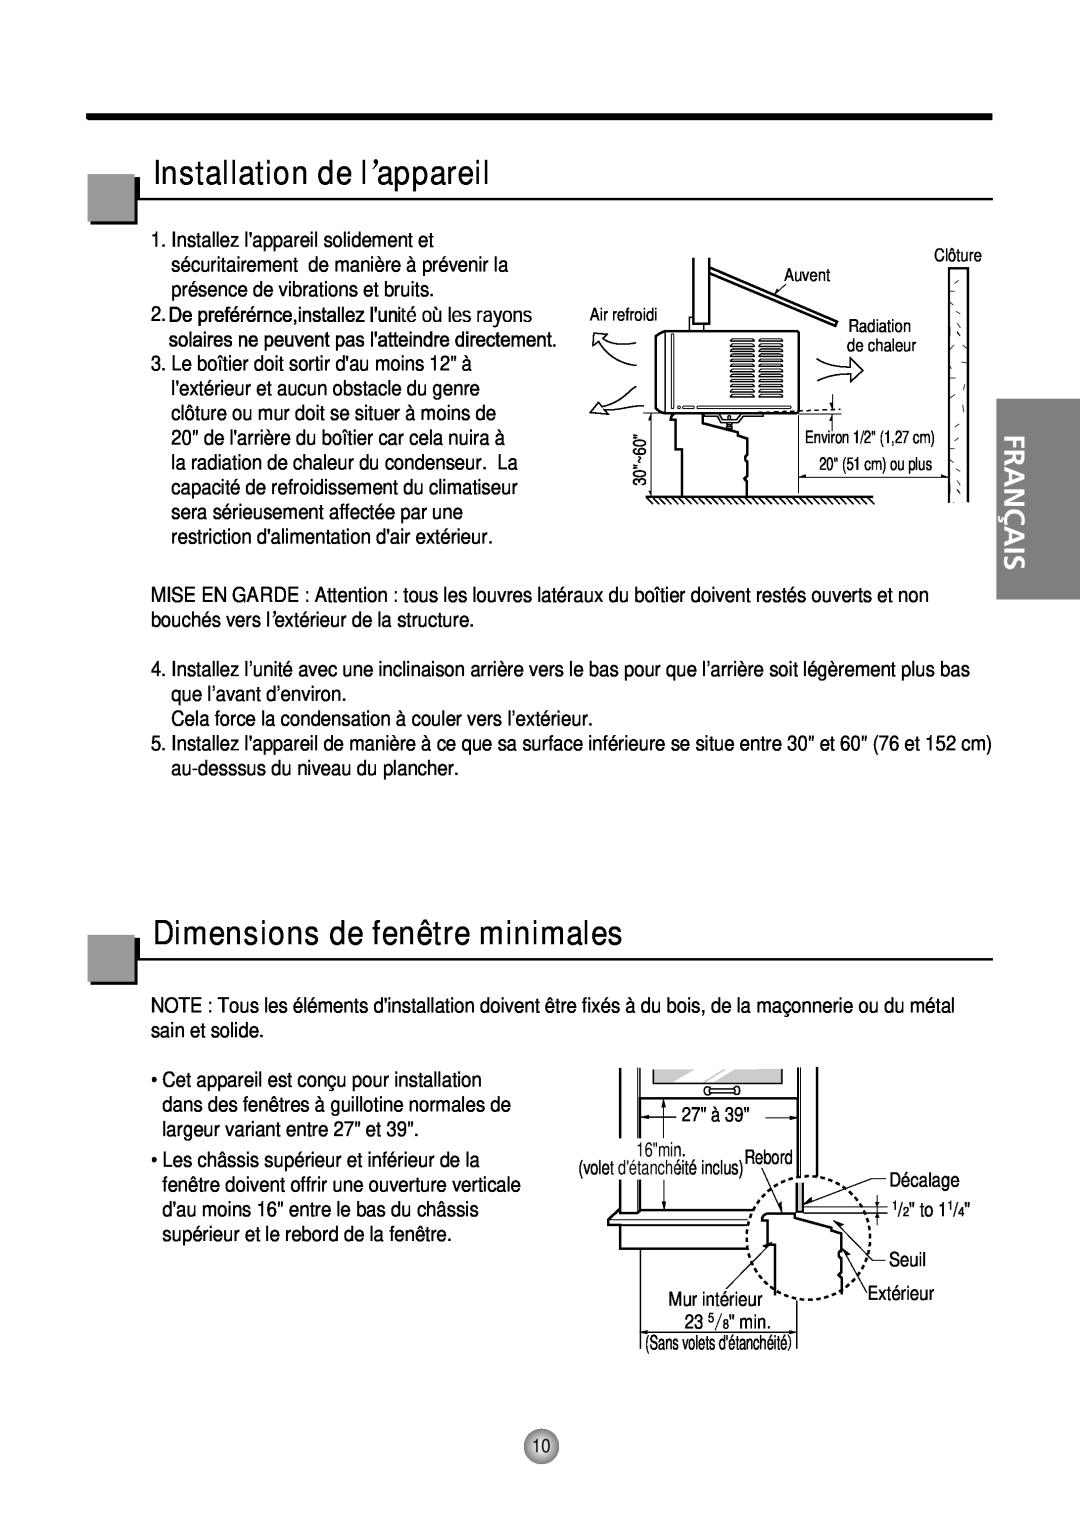 Friedrich CP10, CP12 manual Installation de l’appareil, Dimensions de fenêtre minimales, Français 